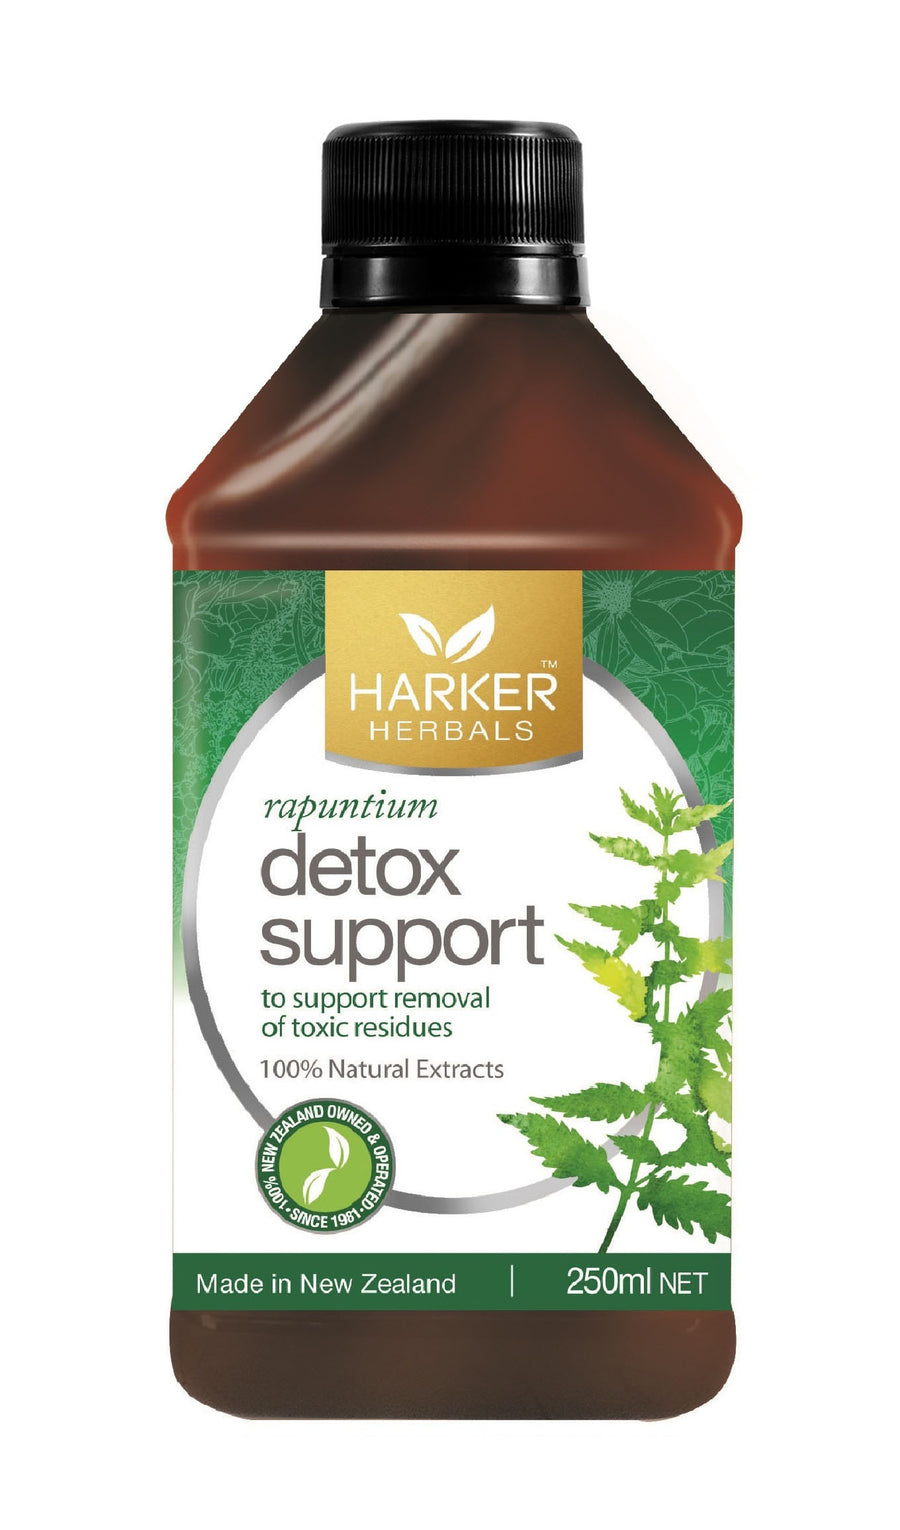 Harker Herbals Detox Support Tonic